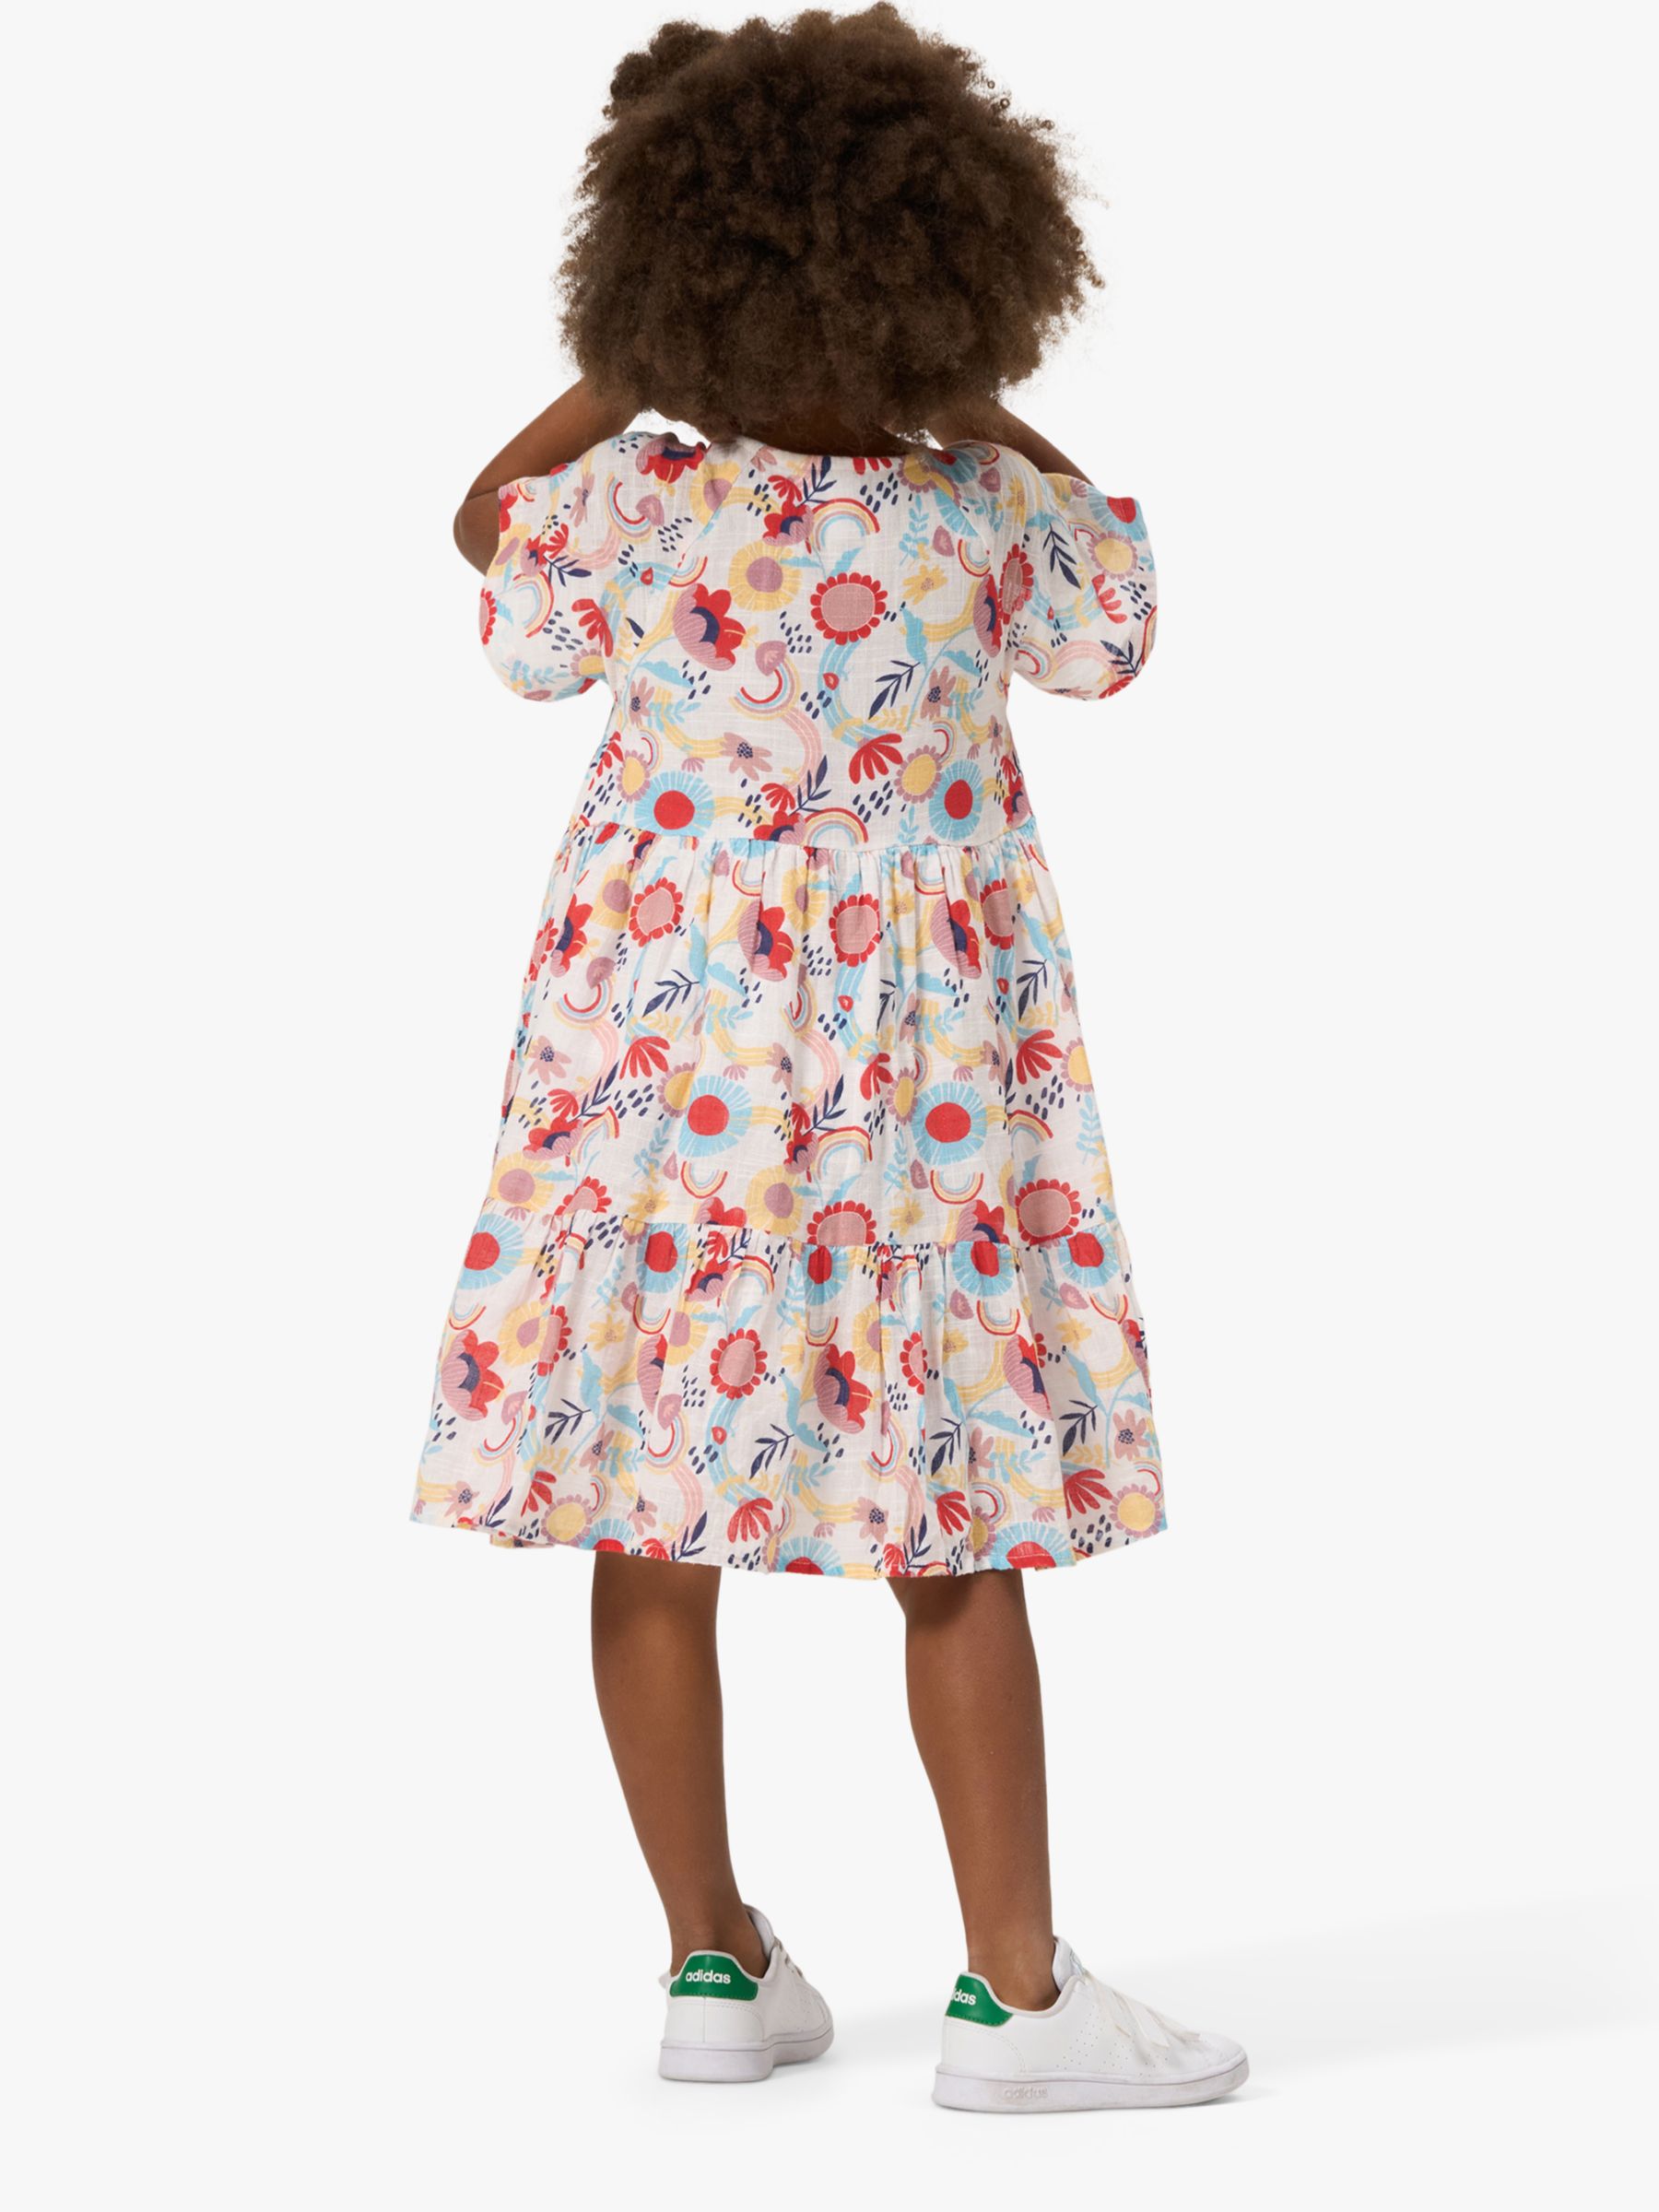 Angel & Rocket Kids' Audrey Printed Dress, Multi, 3 years